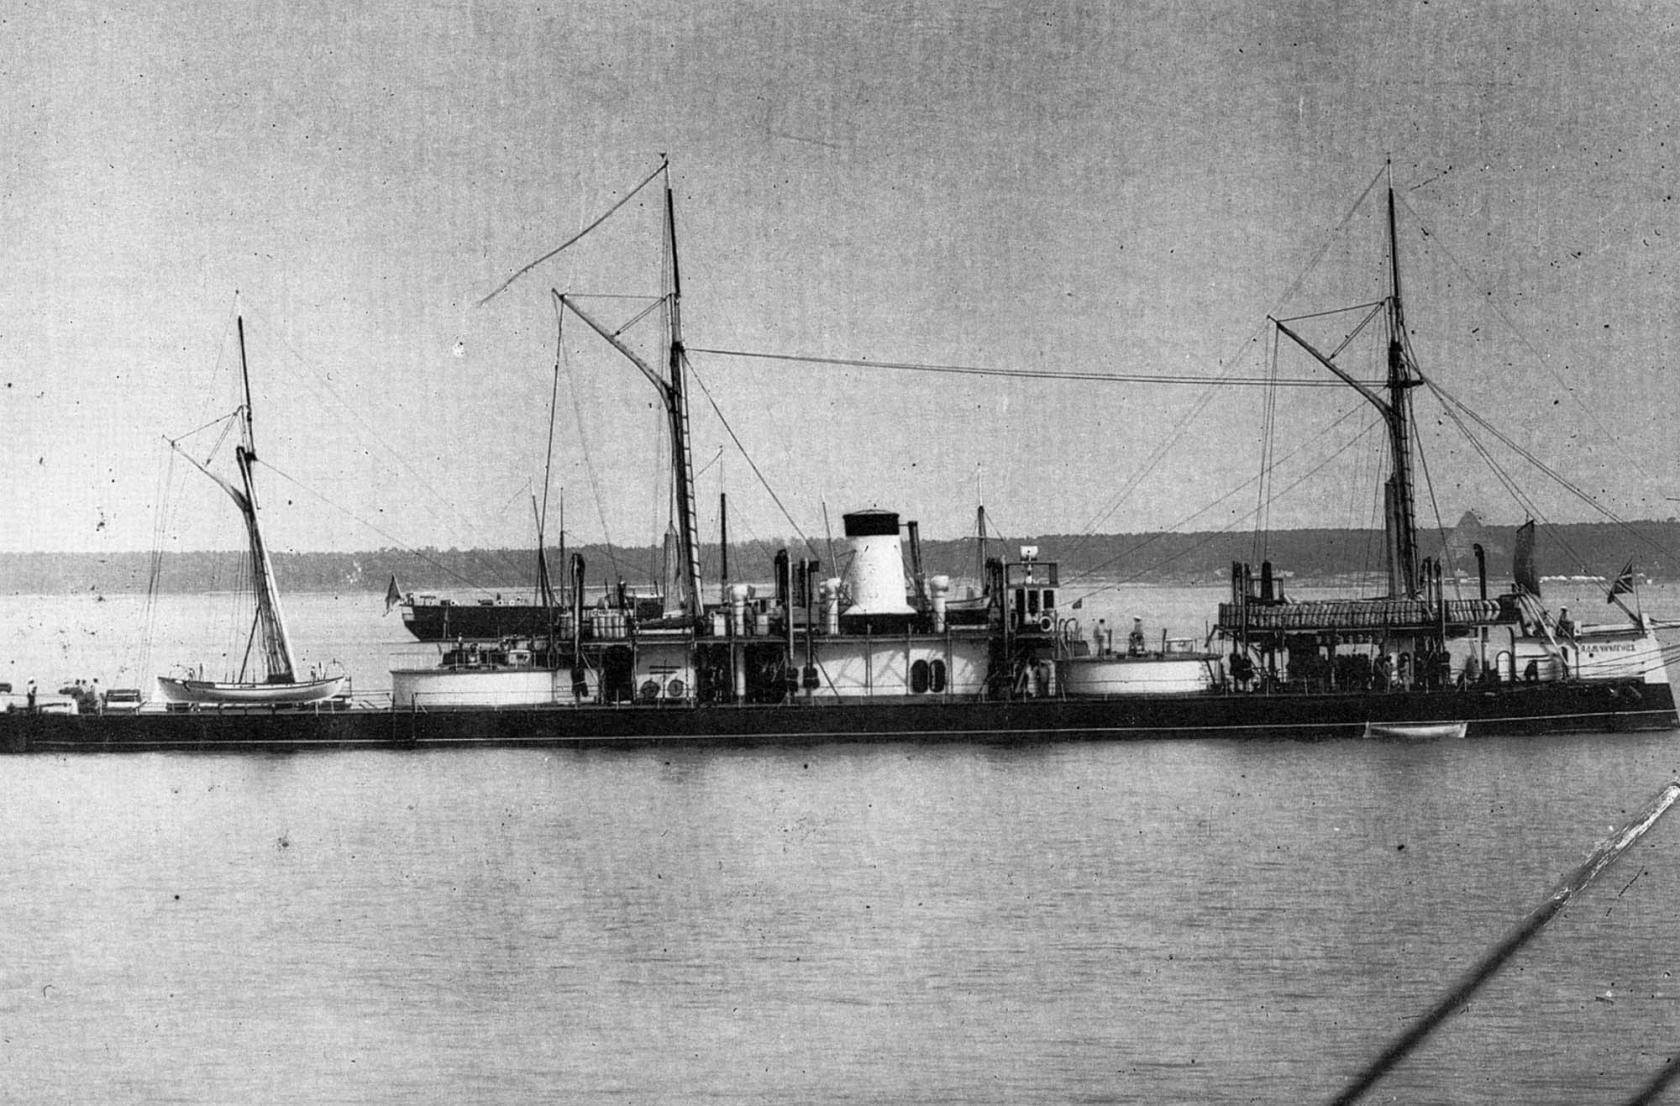 Броненосный башенный фрегат Адмирал Чичагов. 1866 - 1907. Вступил в строй в 1869. Водоизмещение 3630 т. Размерения 77.55х13.11х4.6_5.44 м